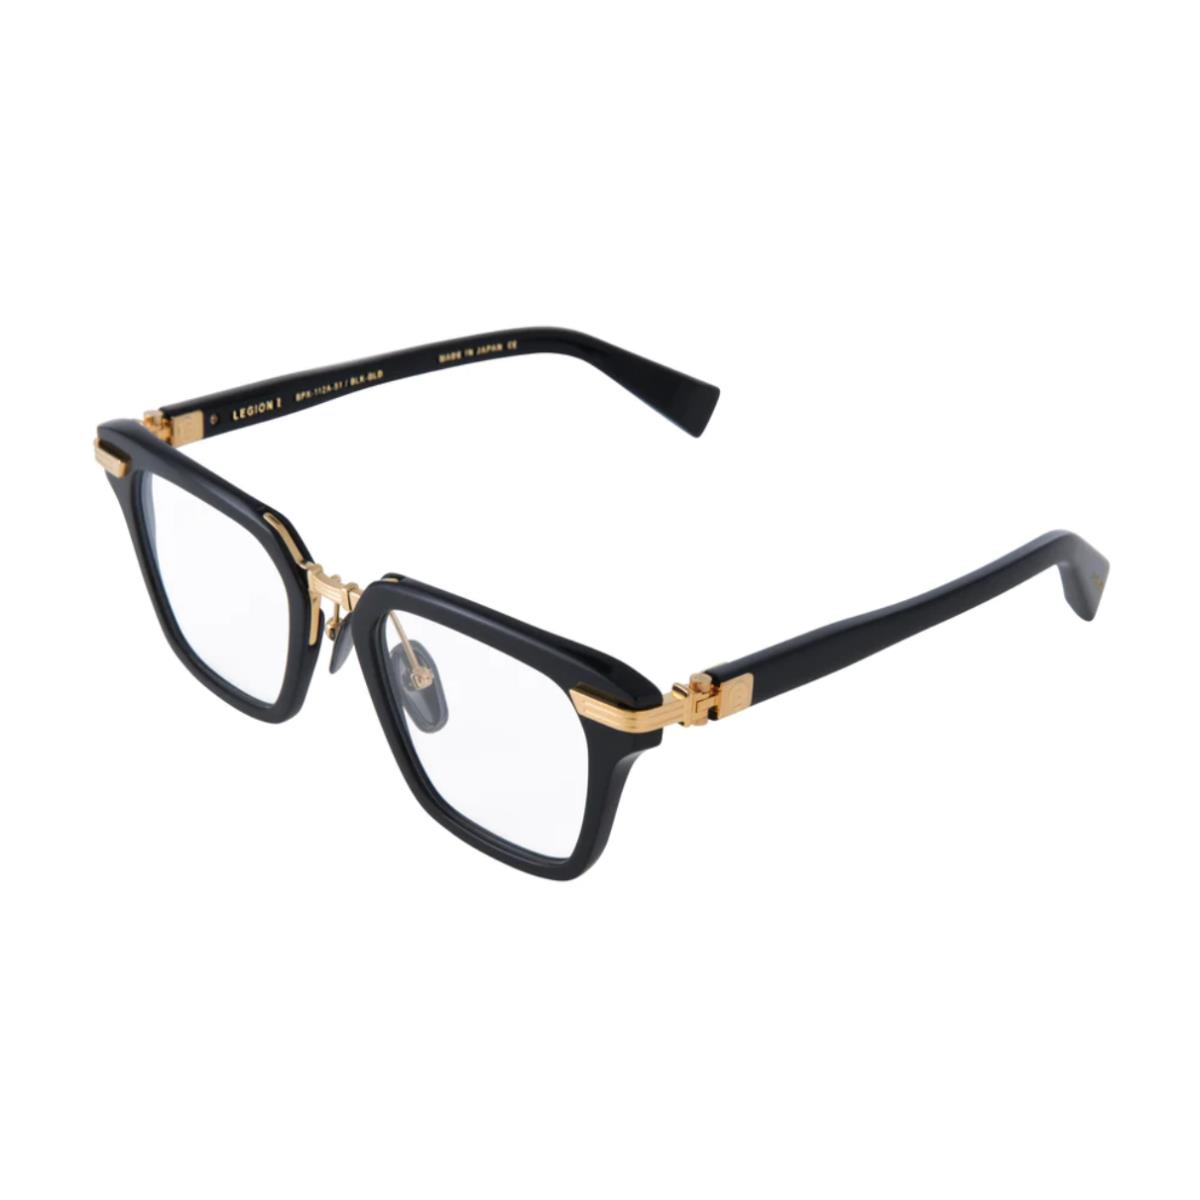 Balmain Eyeglasses Legion I Black Gold Full Rim Frames 51MM Rx-able